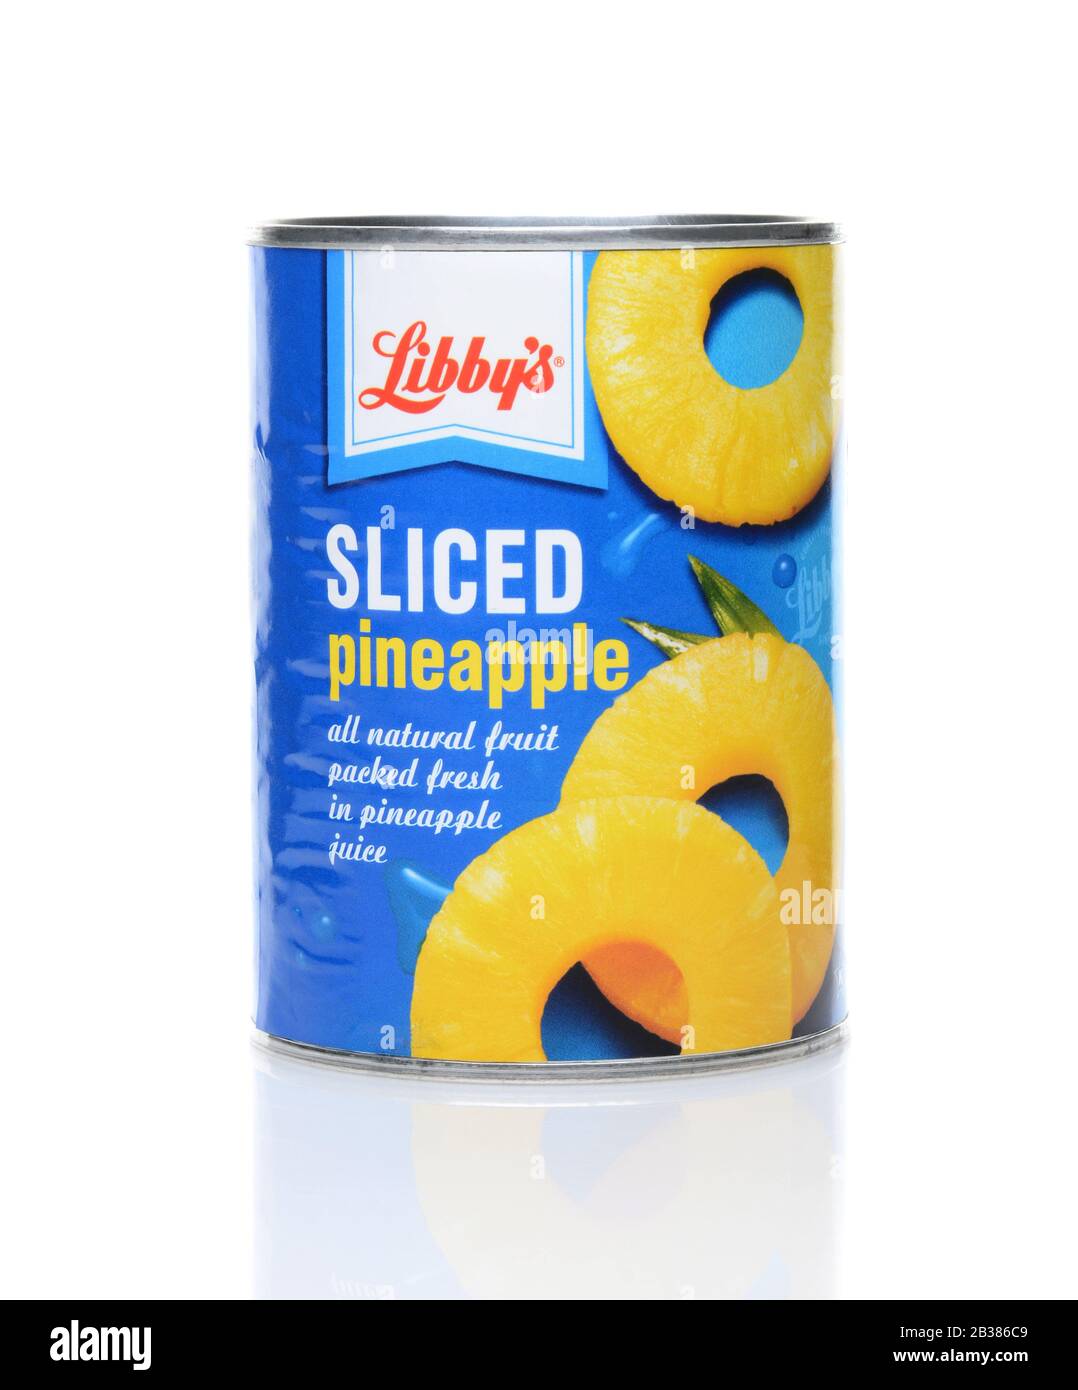 Irvine, CA - 23 GIUGNO 2014: Una lattina di ananas affettato di Libby. Libby's, fondata nel 1869, è un'azienda alimentare statunitense nota per il suo cibo in scatola. Foto Stock